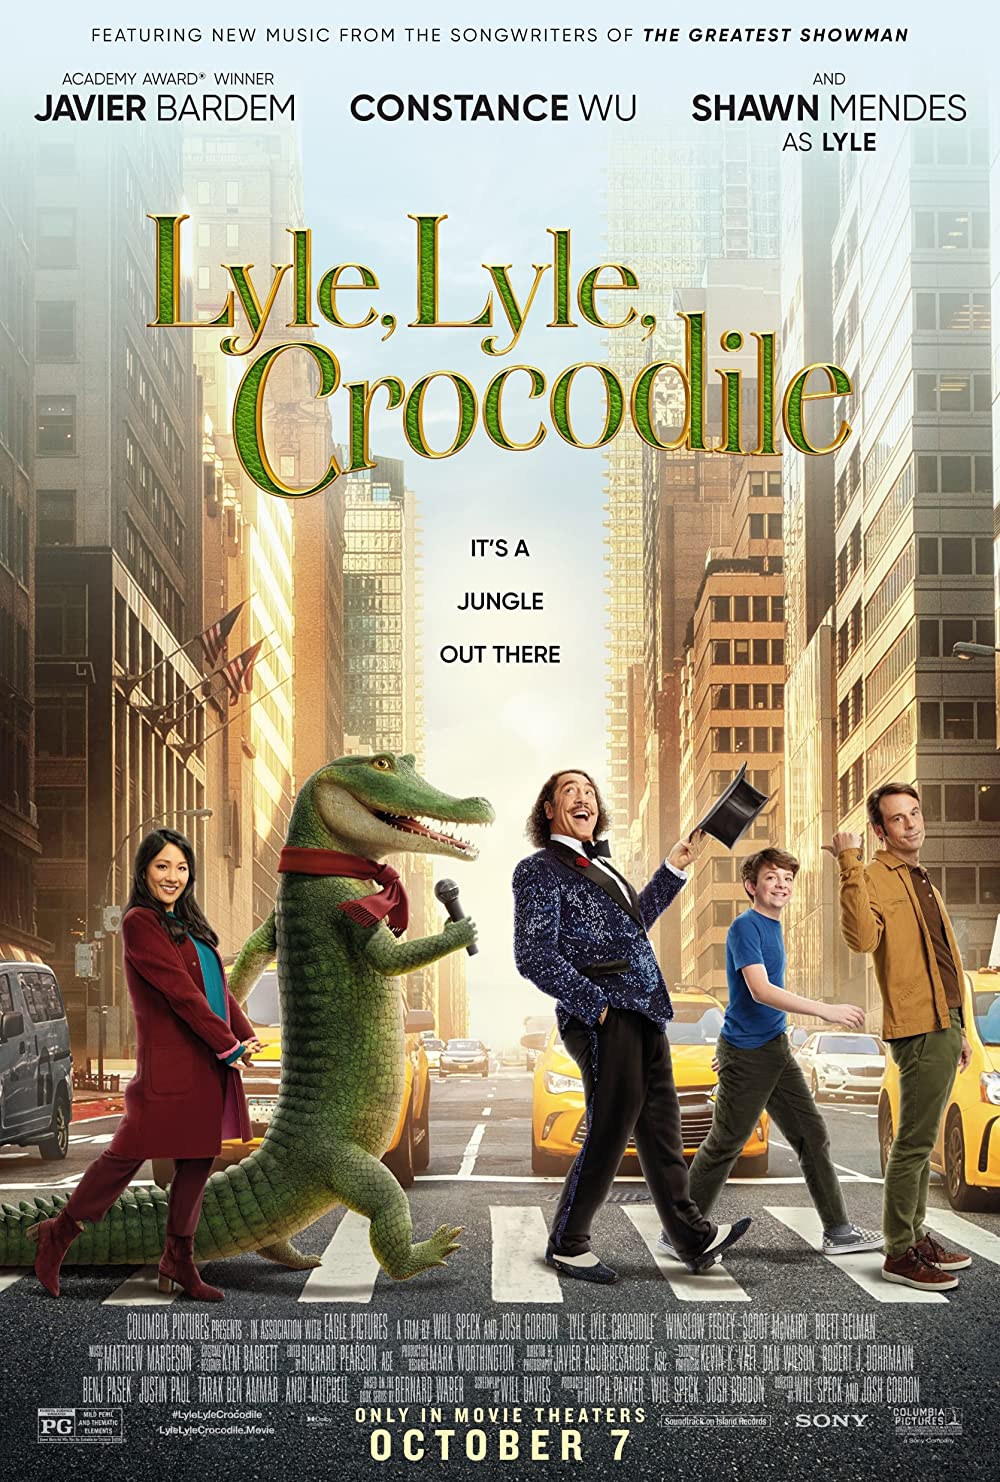 ดูหนังออนไลน์ หนังใหม่ล่าสุด LYLE, LYLE, CROCODILE (2022)